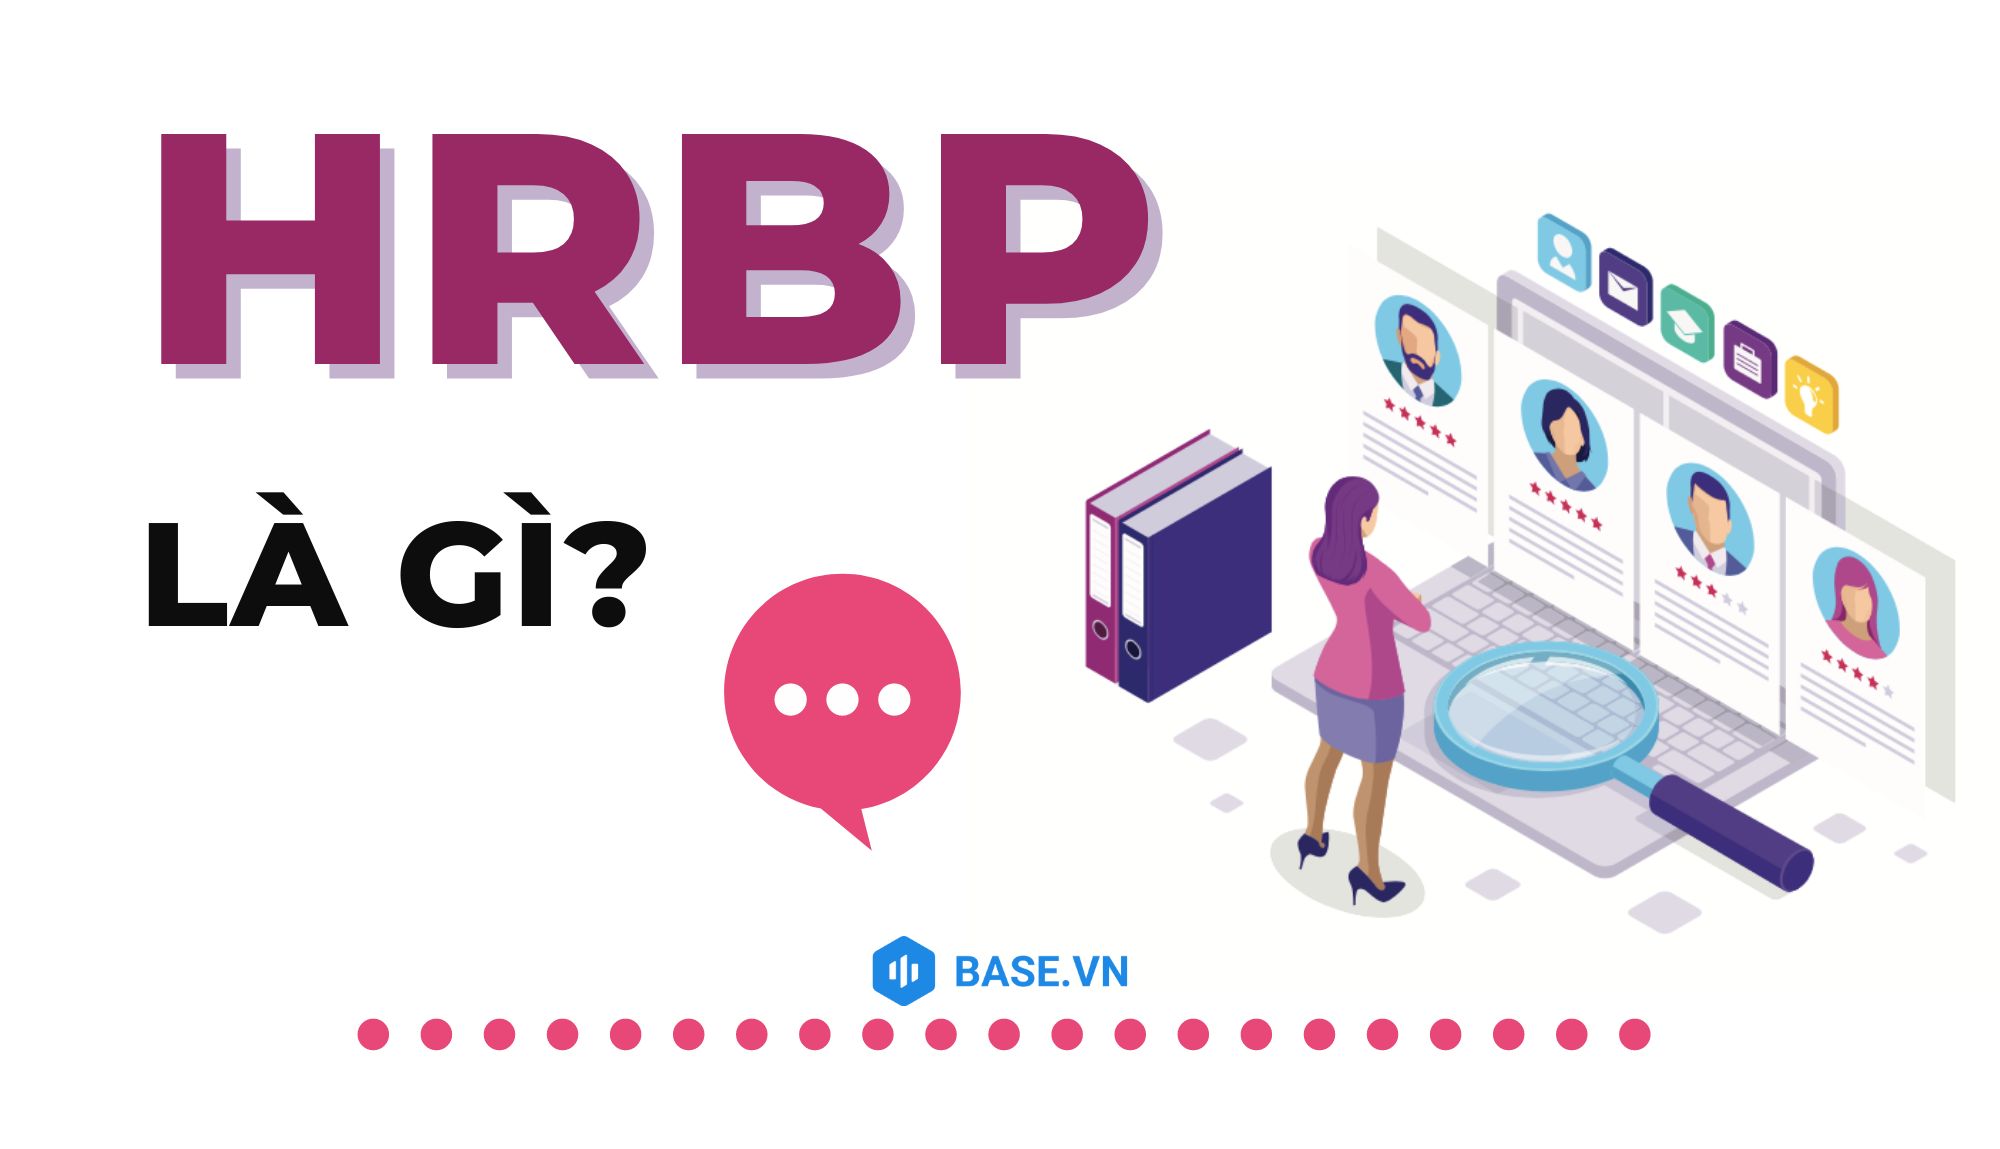 HRBP là gì?
